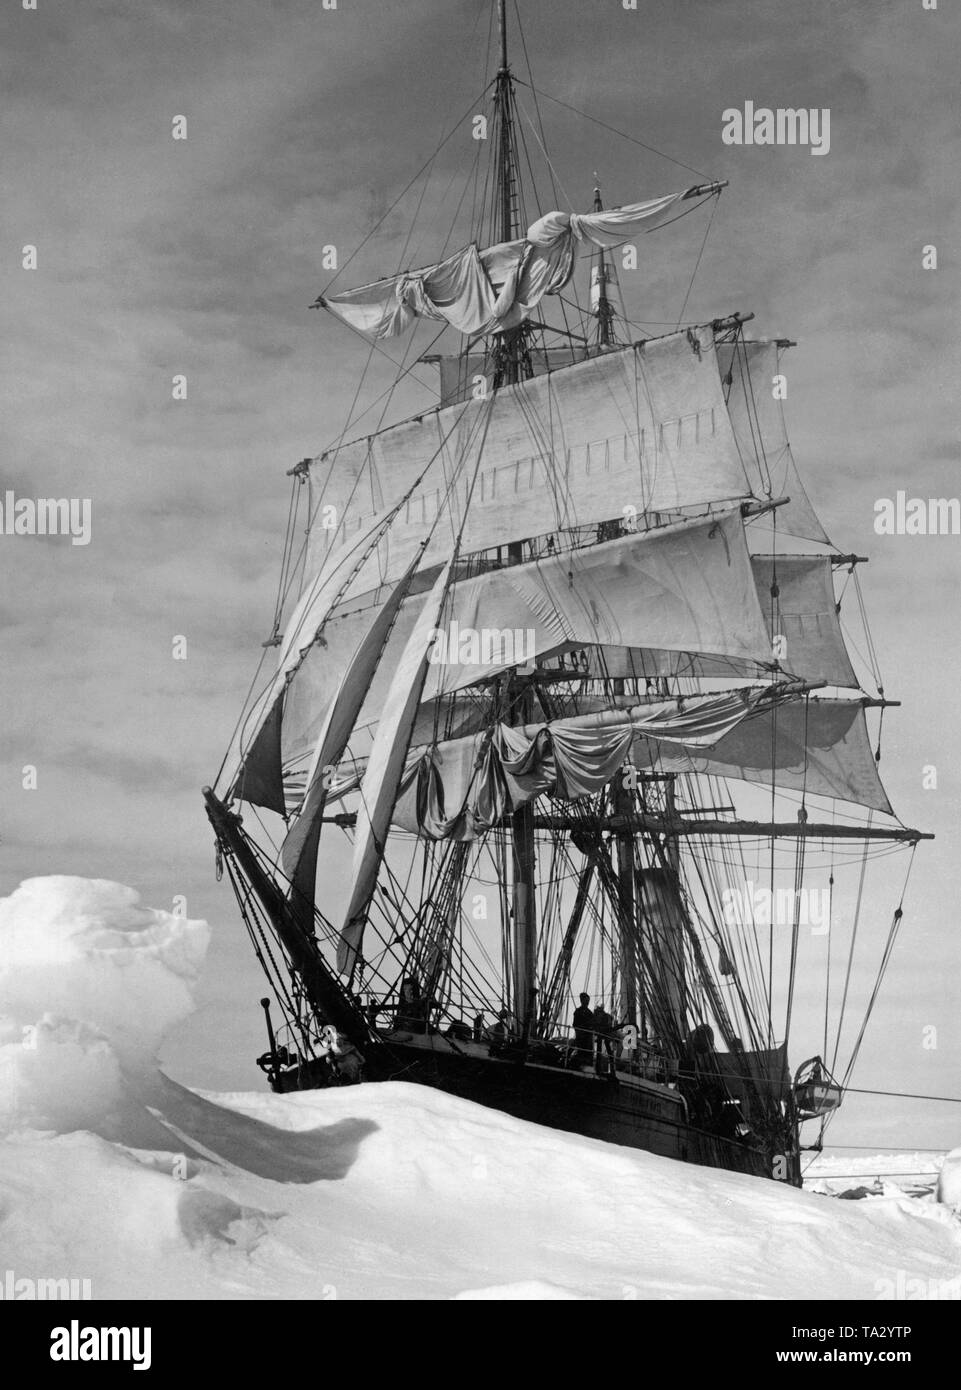 L'expédition britannique navire 'Terra Nova' au cours d'un voyage de recherche dans les glaces. Banque D'Images